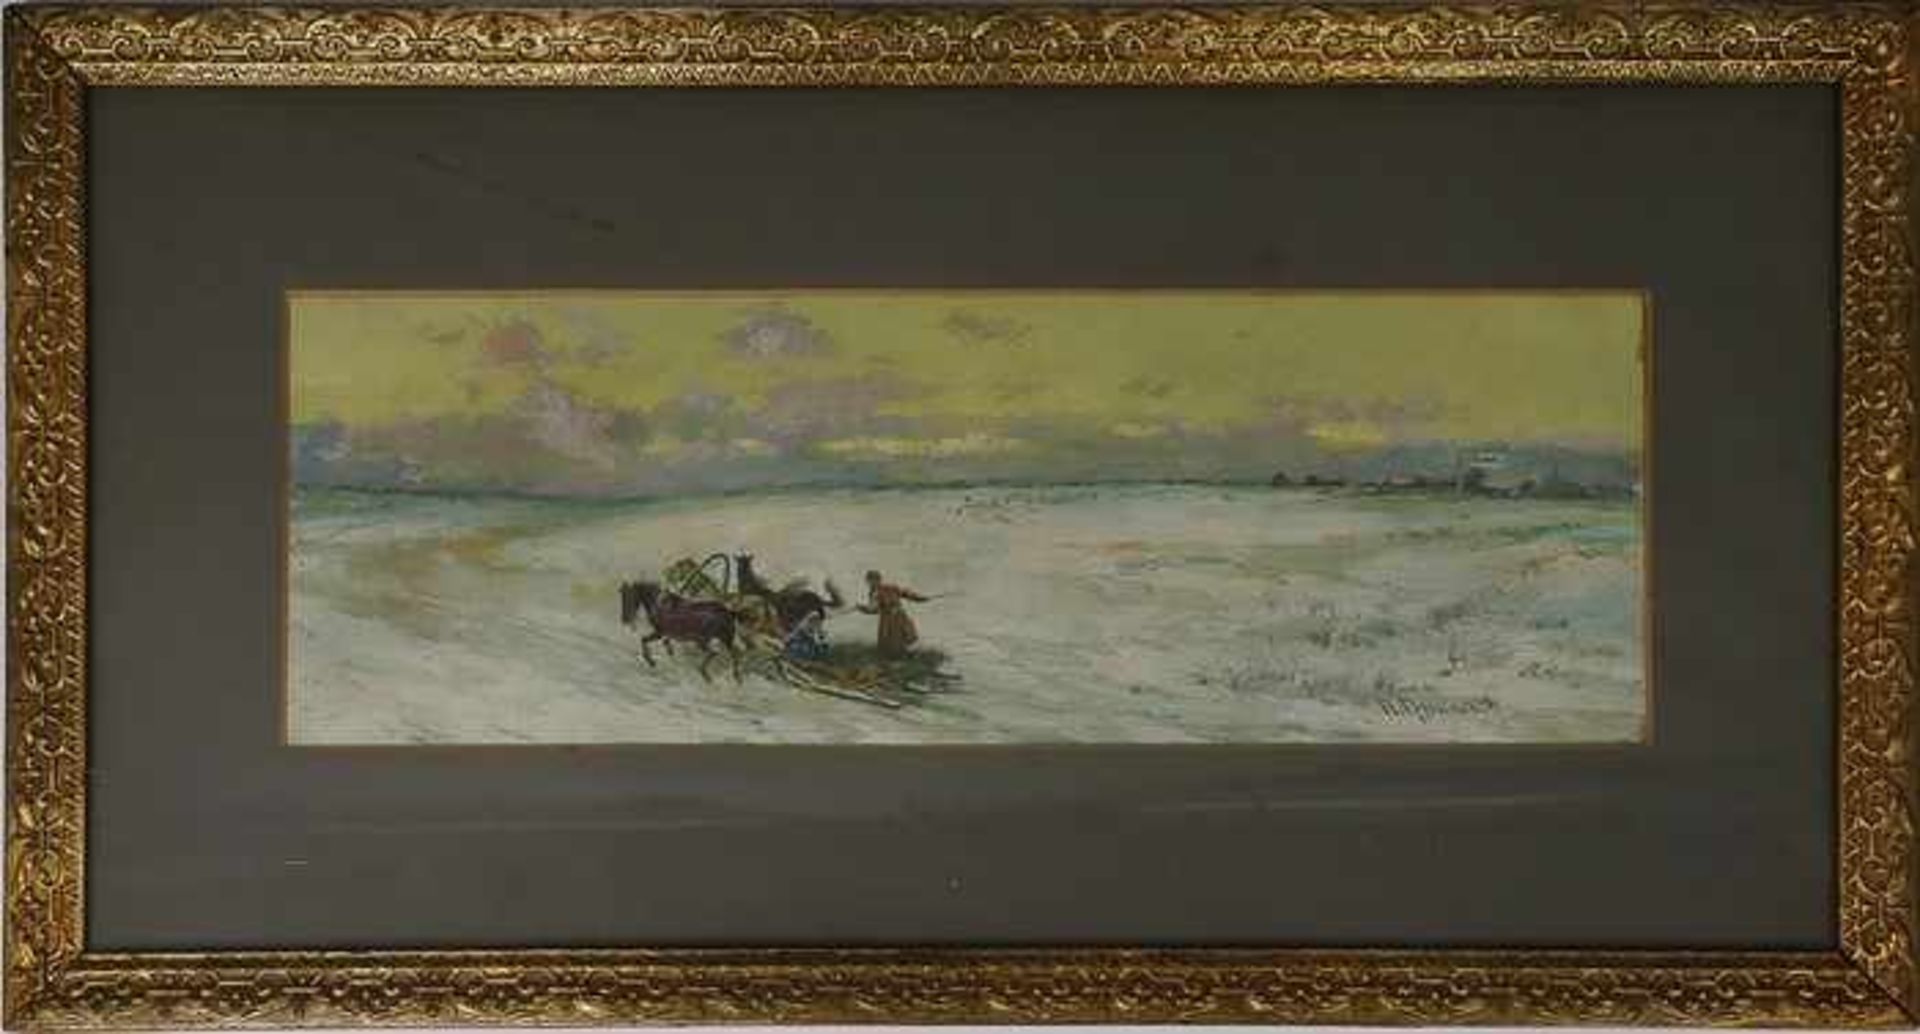 Gruzinsky, Peter Nikolajewitsch1837-1892, russischer Maler, "Troika in winterlicher Landschaft", - Bild 2 aus 12